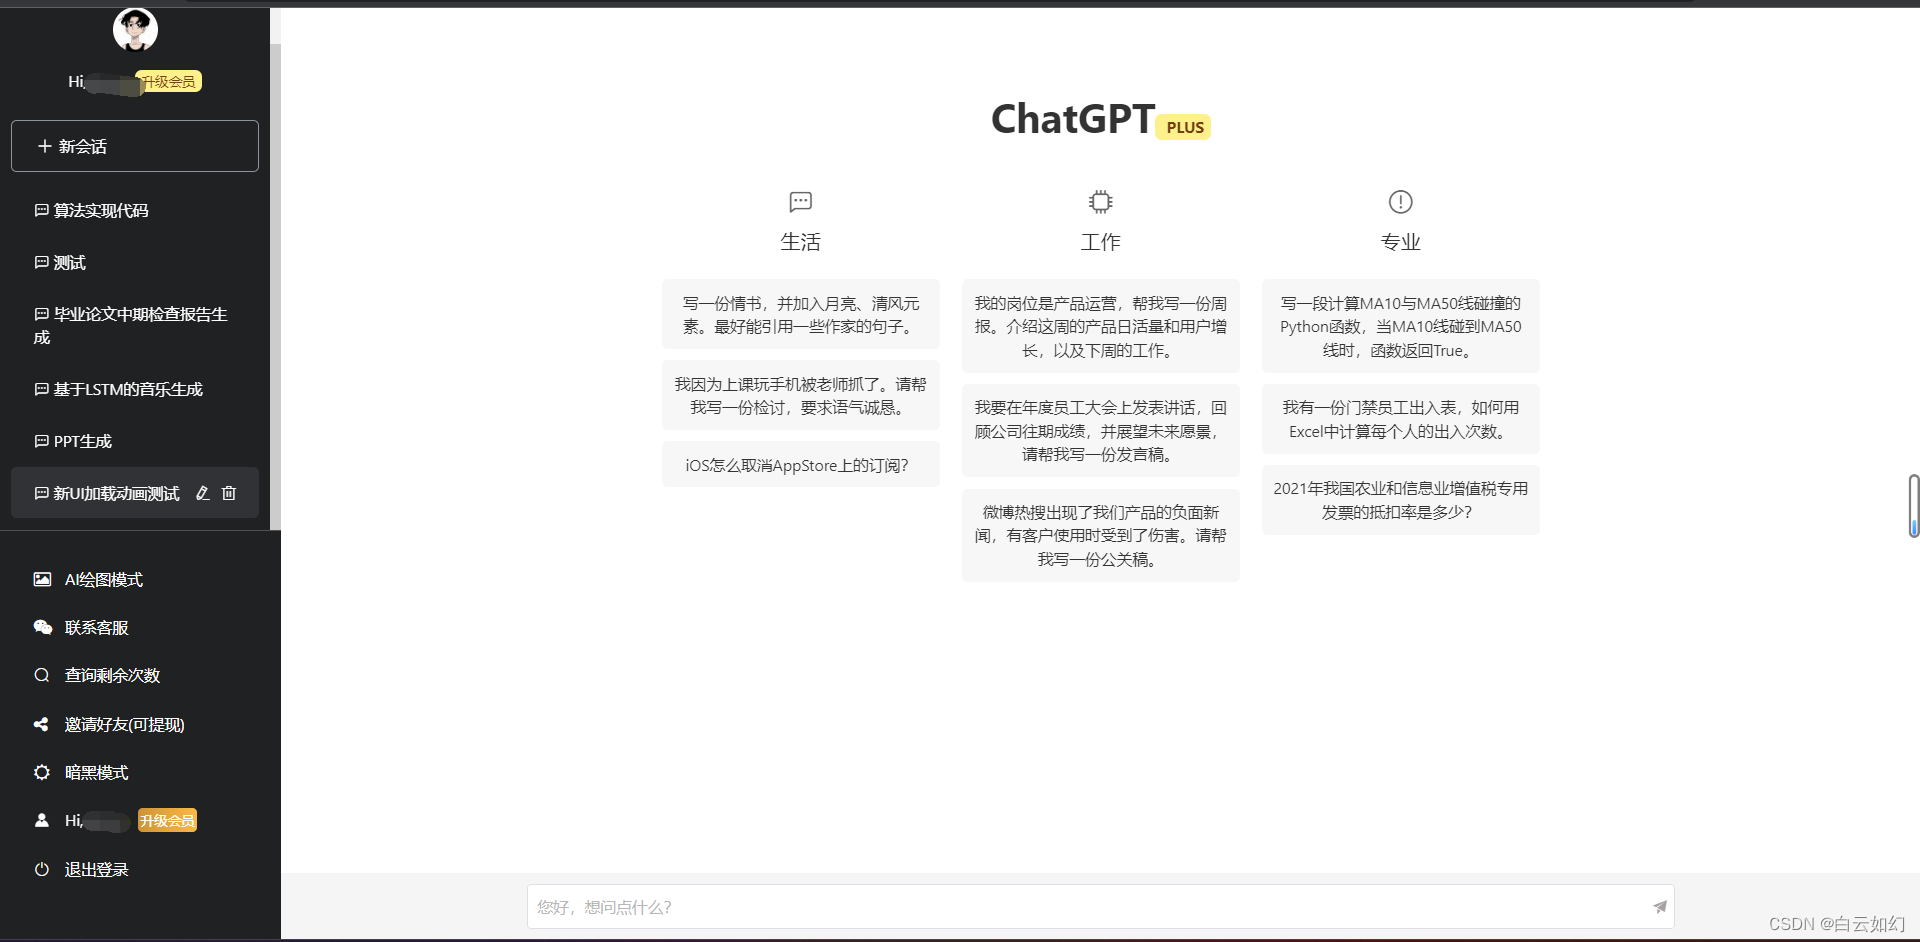 ChatGPT website source code